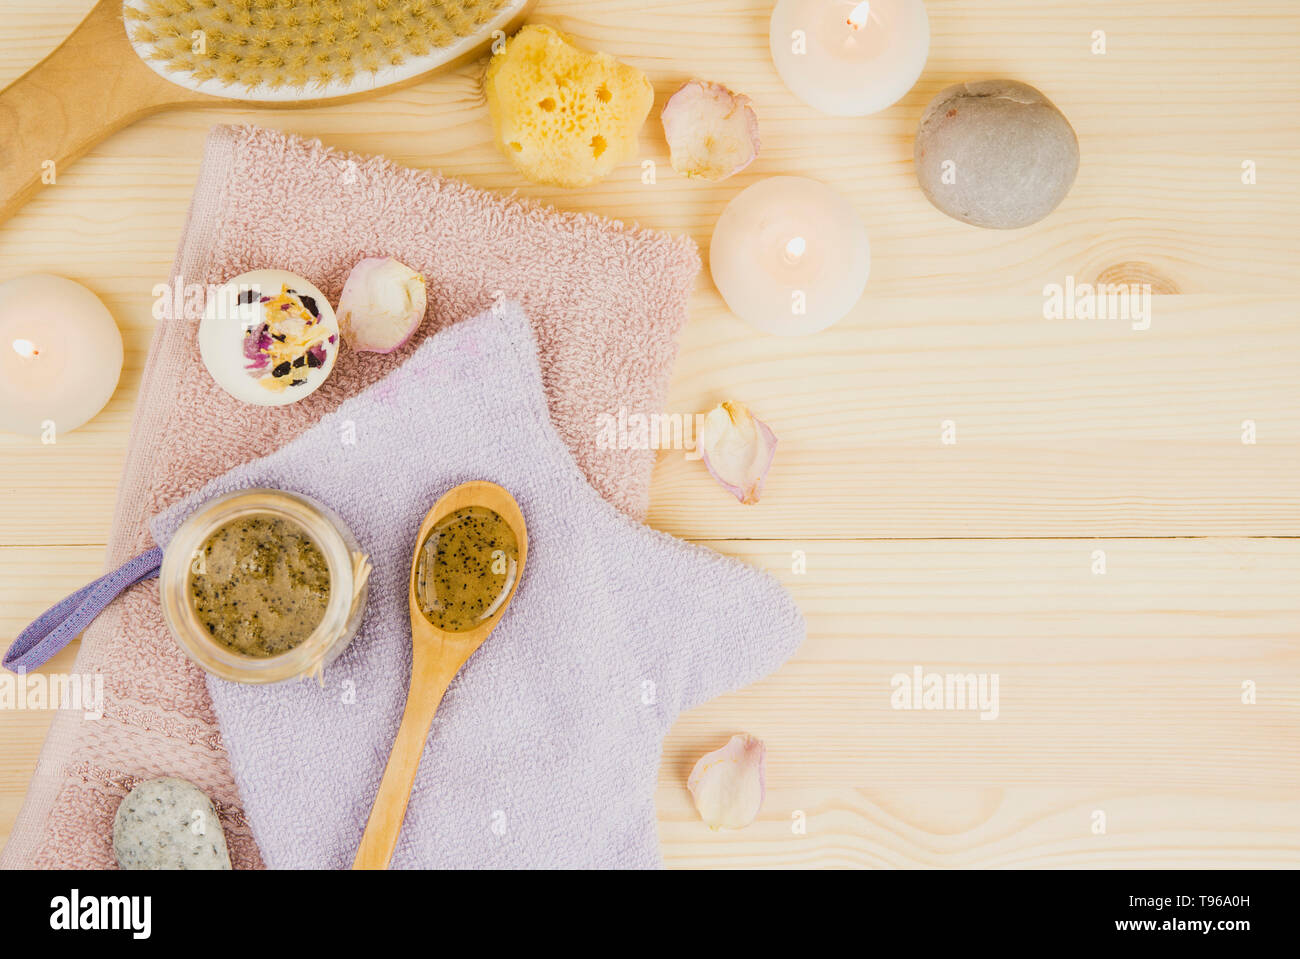 Il miele di sfregamento e miscela di caffè sul corpo nella sauna calda contribuisce ad aprire i pori e rinnovare e ringiovanire la pelle del corpo. Sauna concetto di trattamento. Lay piatto Foto Stock